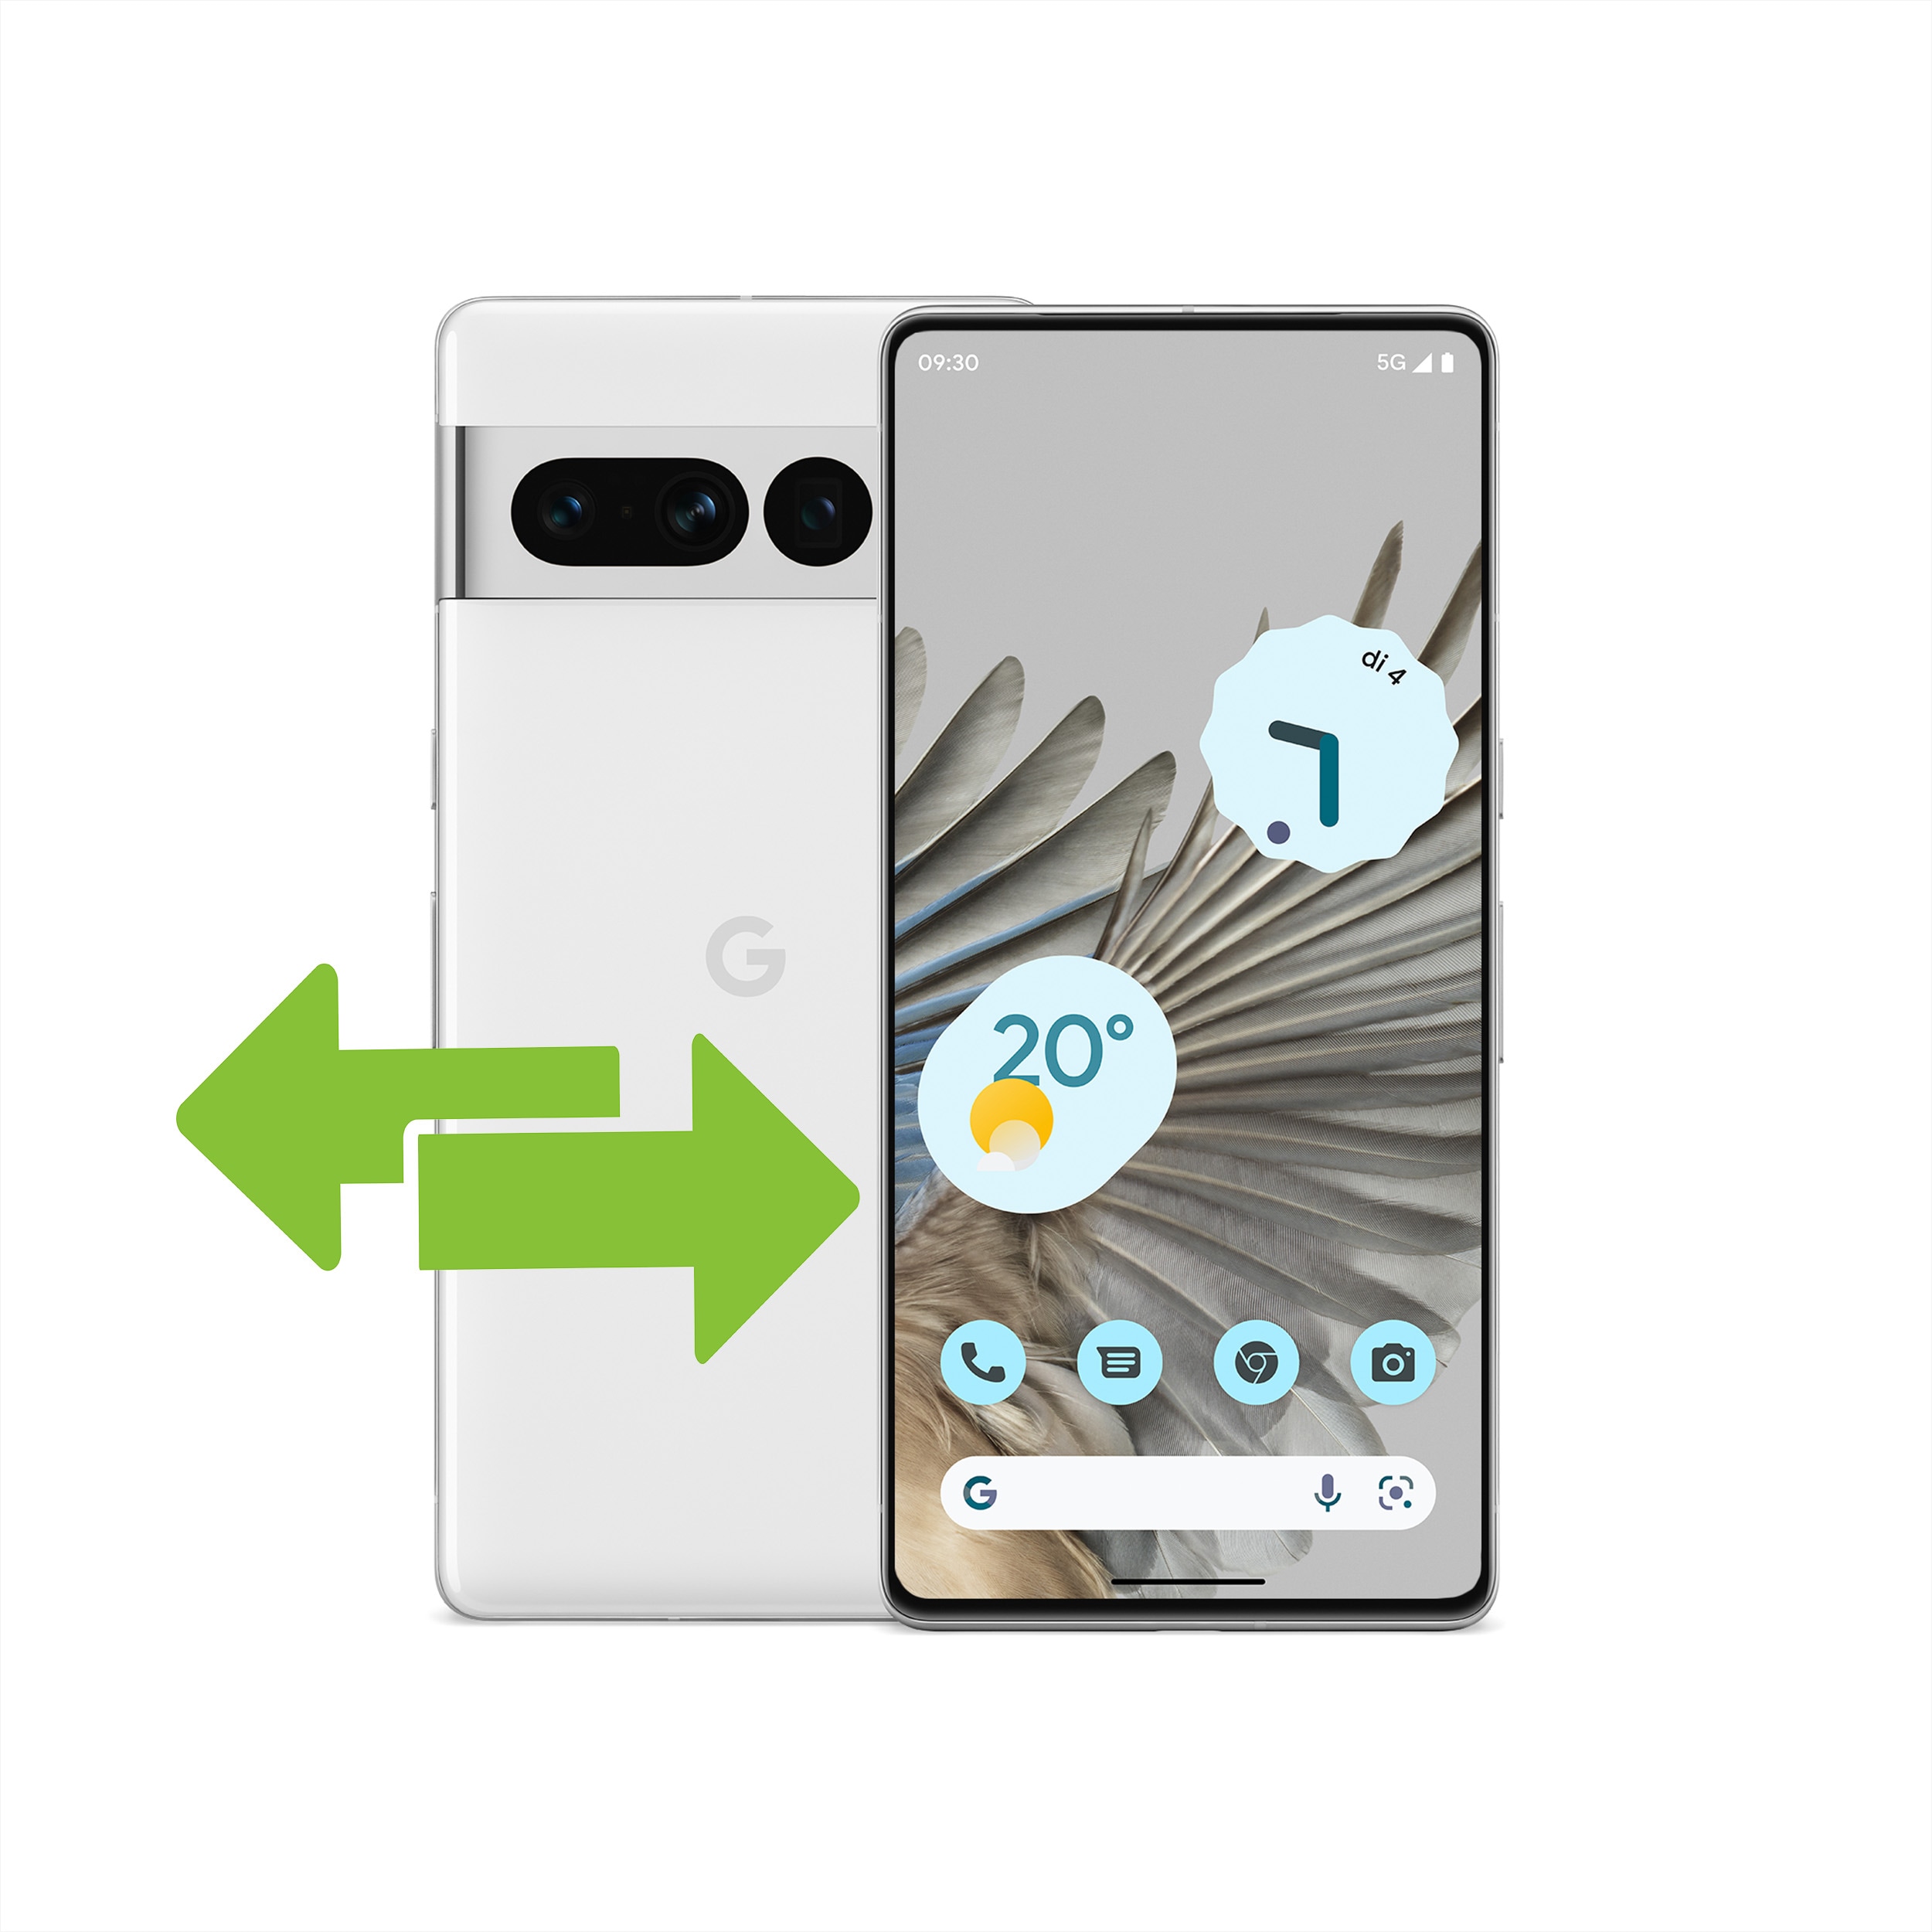 Illustration af to telefoner, der illustrerer skiftet fra én Android-telefon til en Pixel